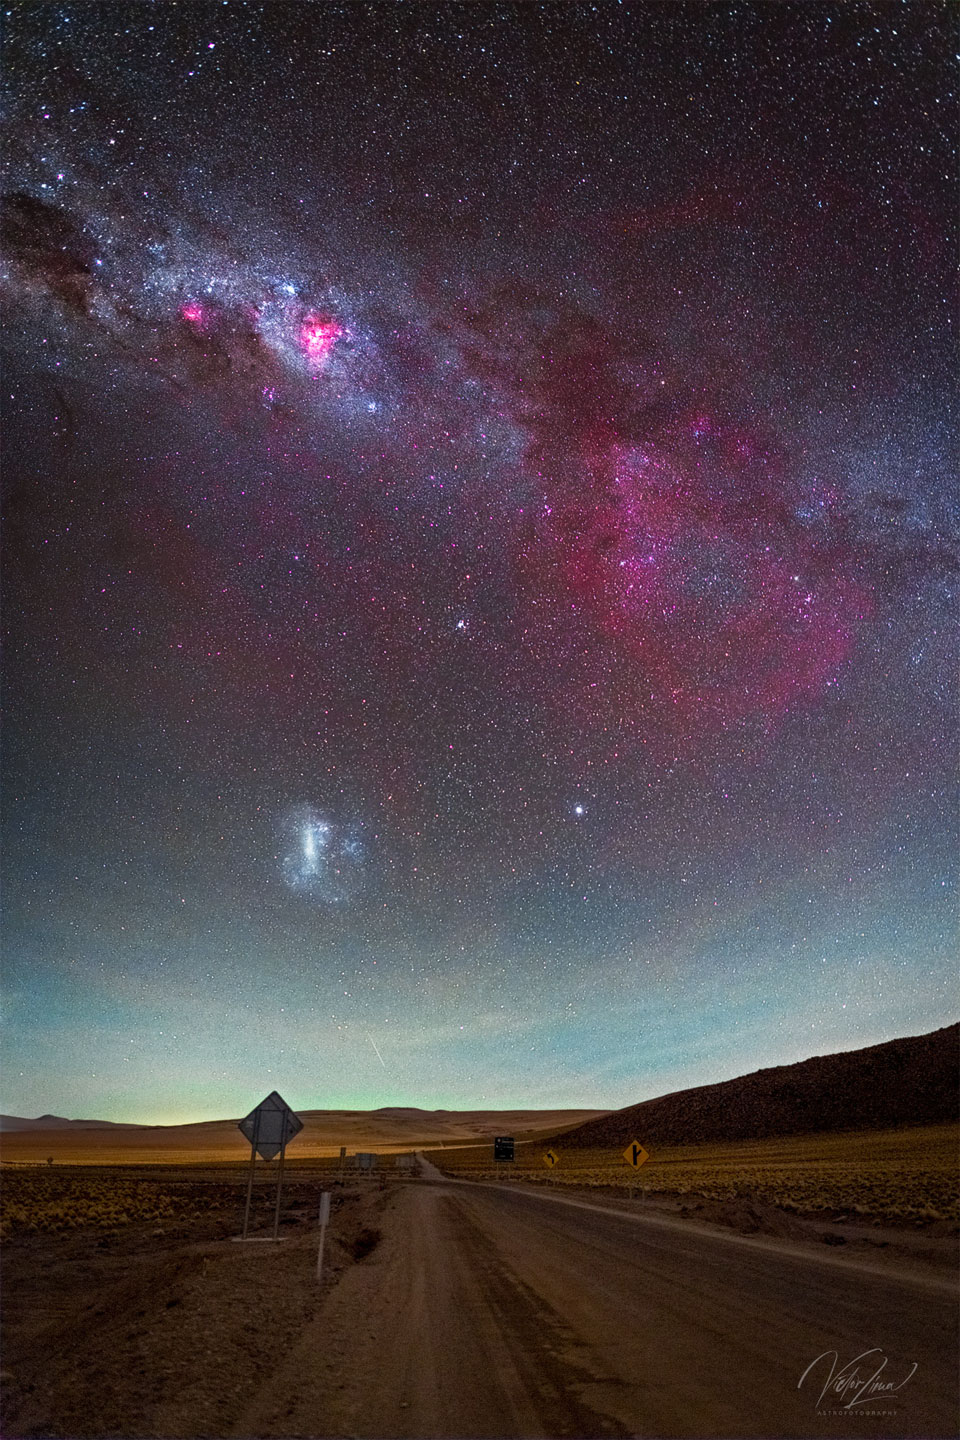 Das Bild zeigt eine großartige Himmelslandschaft mit einer braunen Wüstenstraße im Vordergrund und einen Himmel mit das galaktische Band der Milchstraße mit einem großen roten rechts, dem schwachen Gum-Nebel. Auch die Große Magellansche Wolke ist sichtbar.